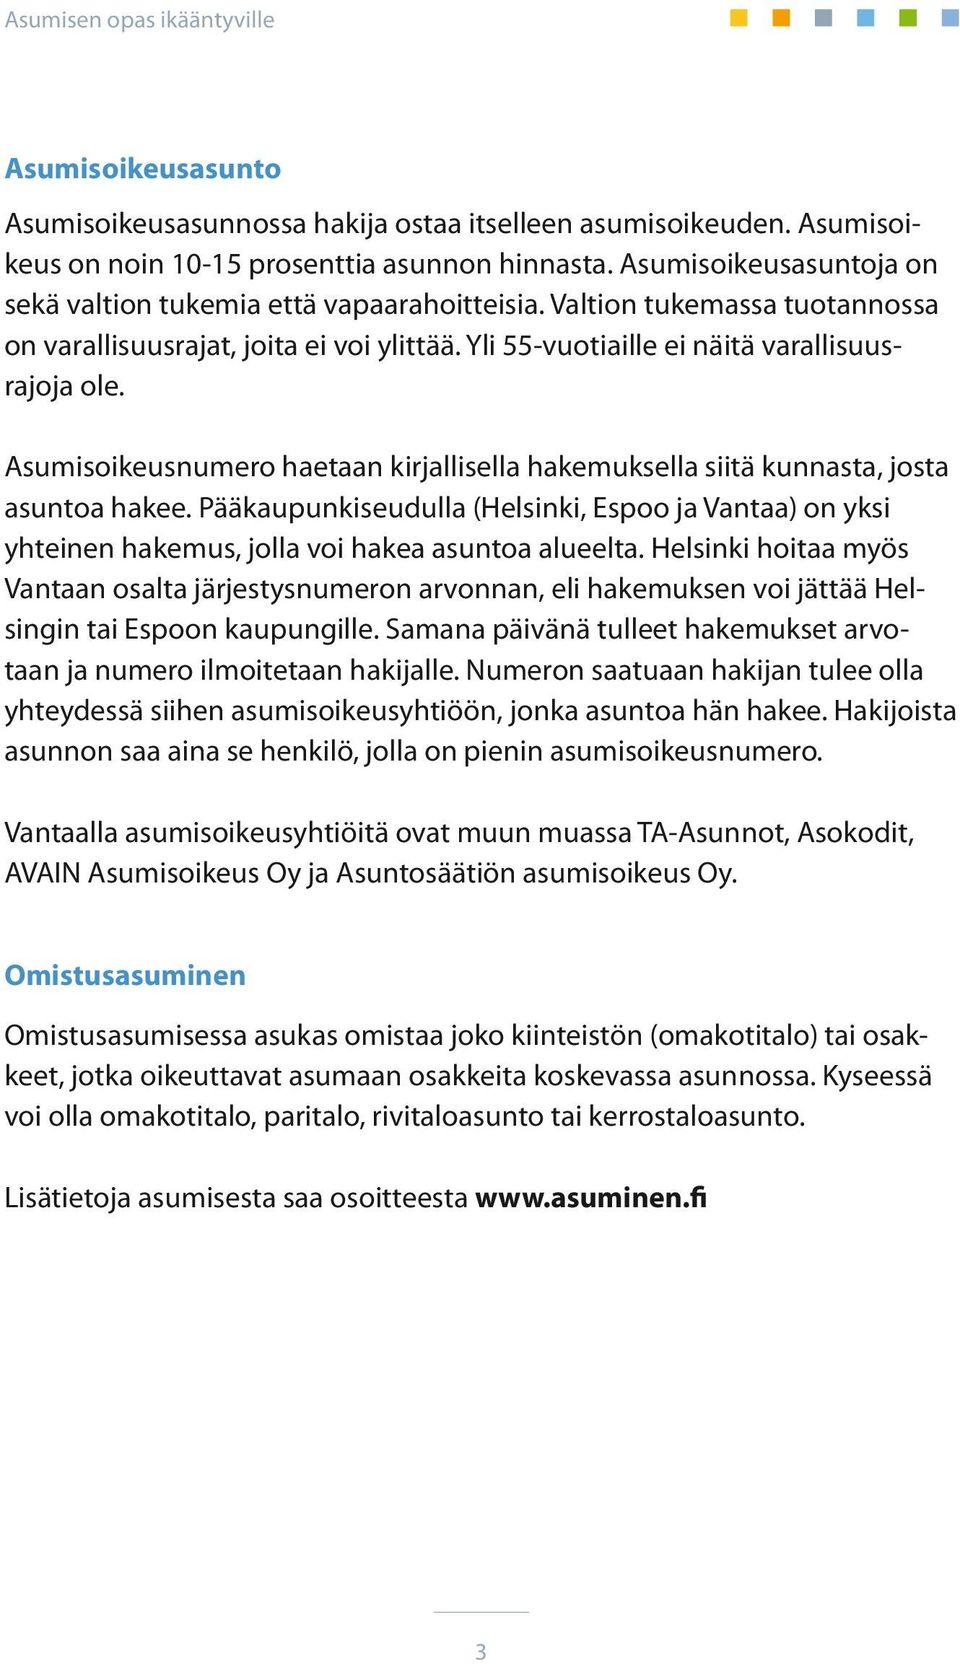 Asumisoikeusnumero haetaan kirjallisella hakemuksella siitä kunnasta, josta asuntoa hakee. Pääkaupunkiseudulla (Helsinki, Espoo ja Vantaa) on yksi yhteinen hakemus, jolla voi hakea asuntoa alueelta.